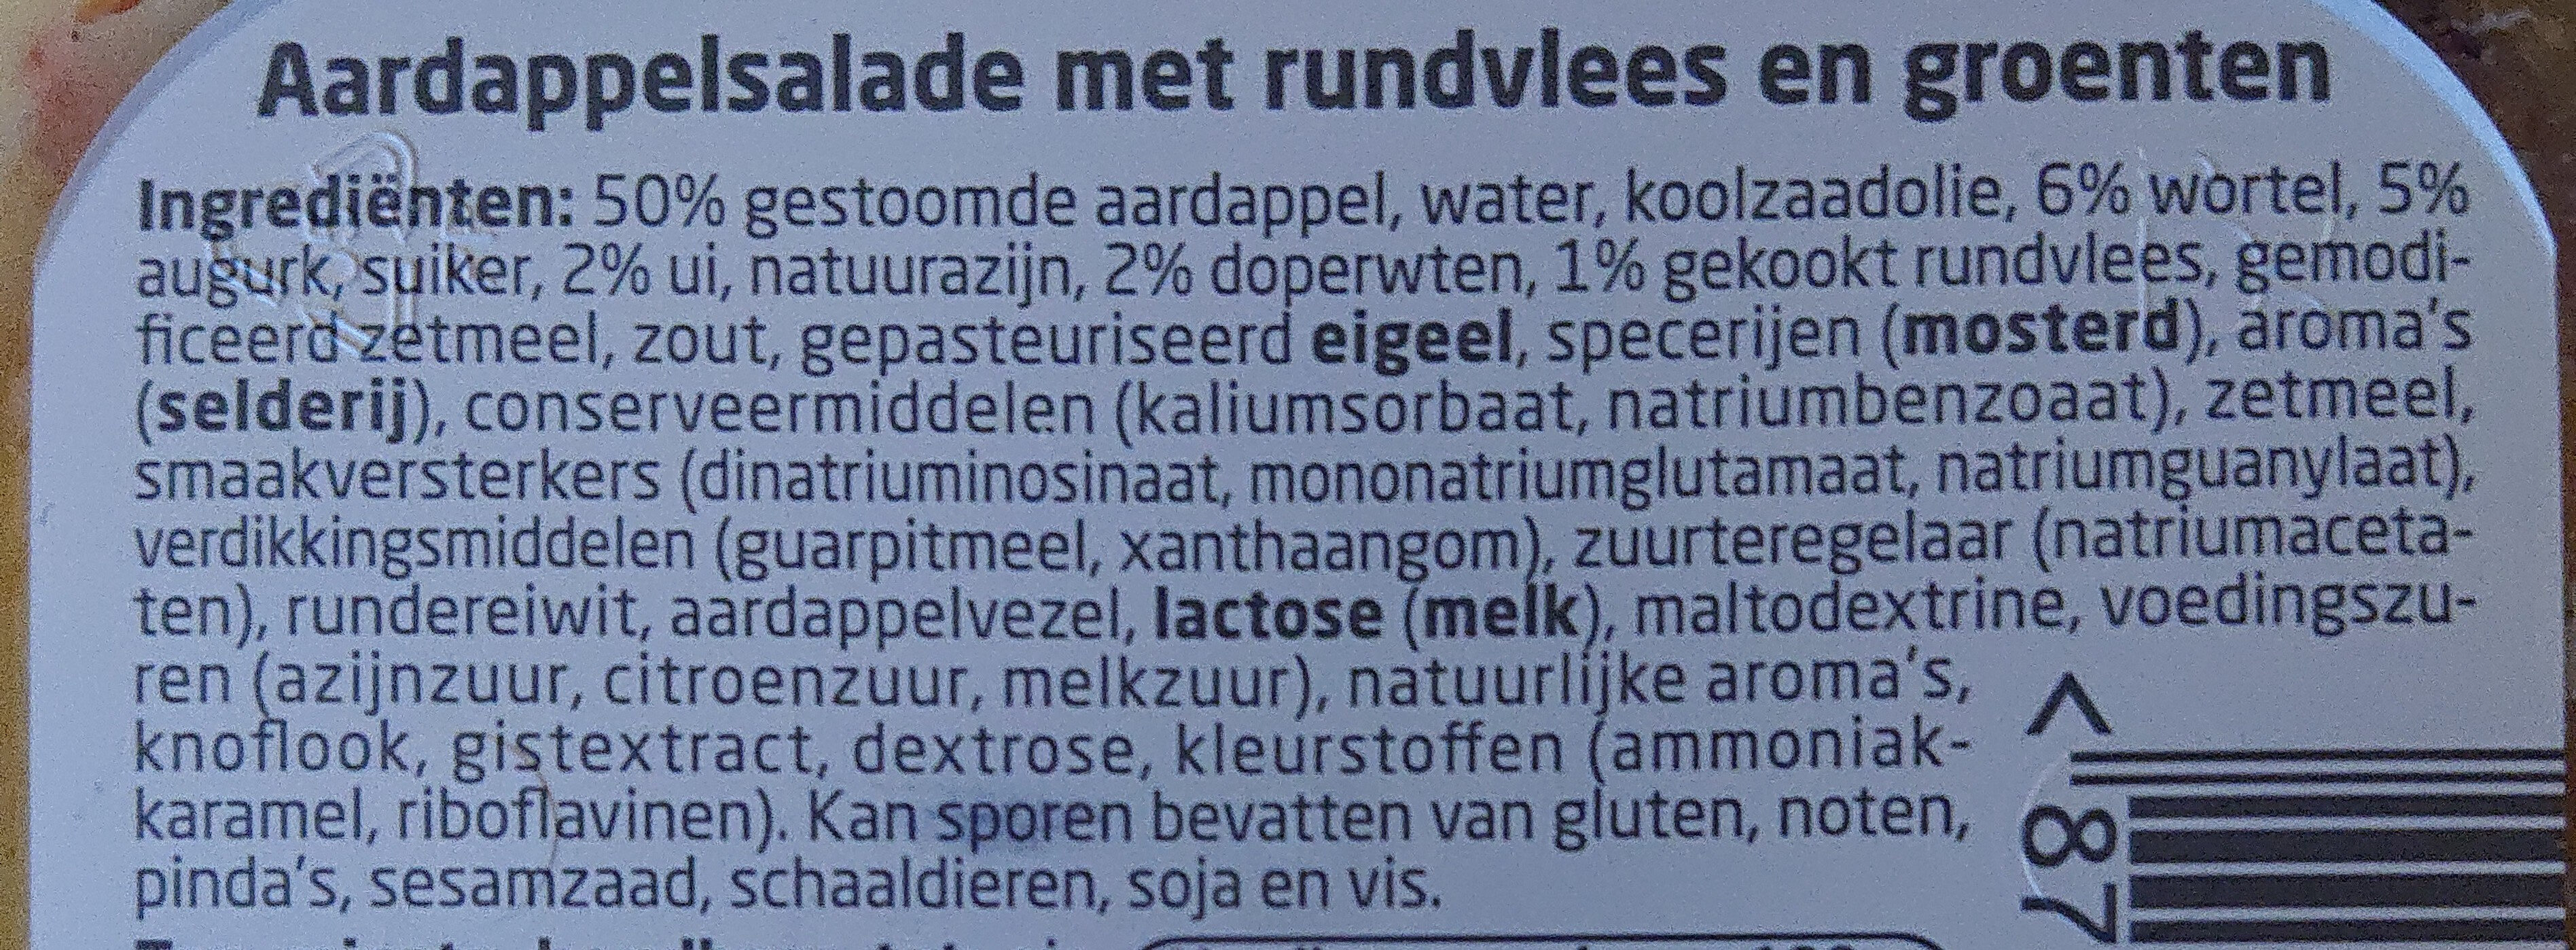 Huzarensalade - Ingredients - nl